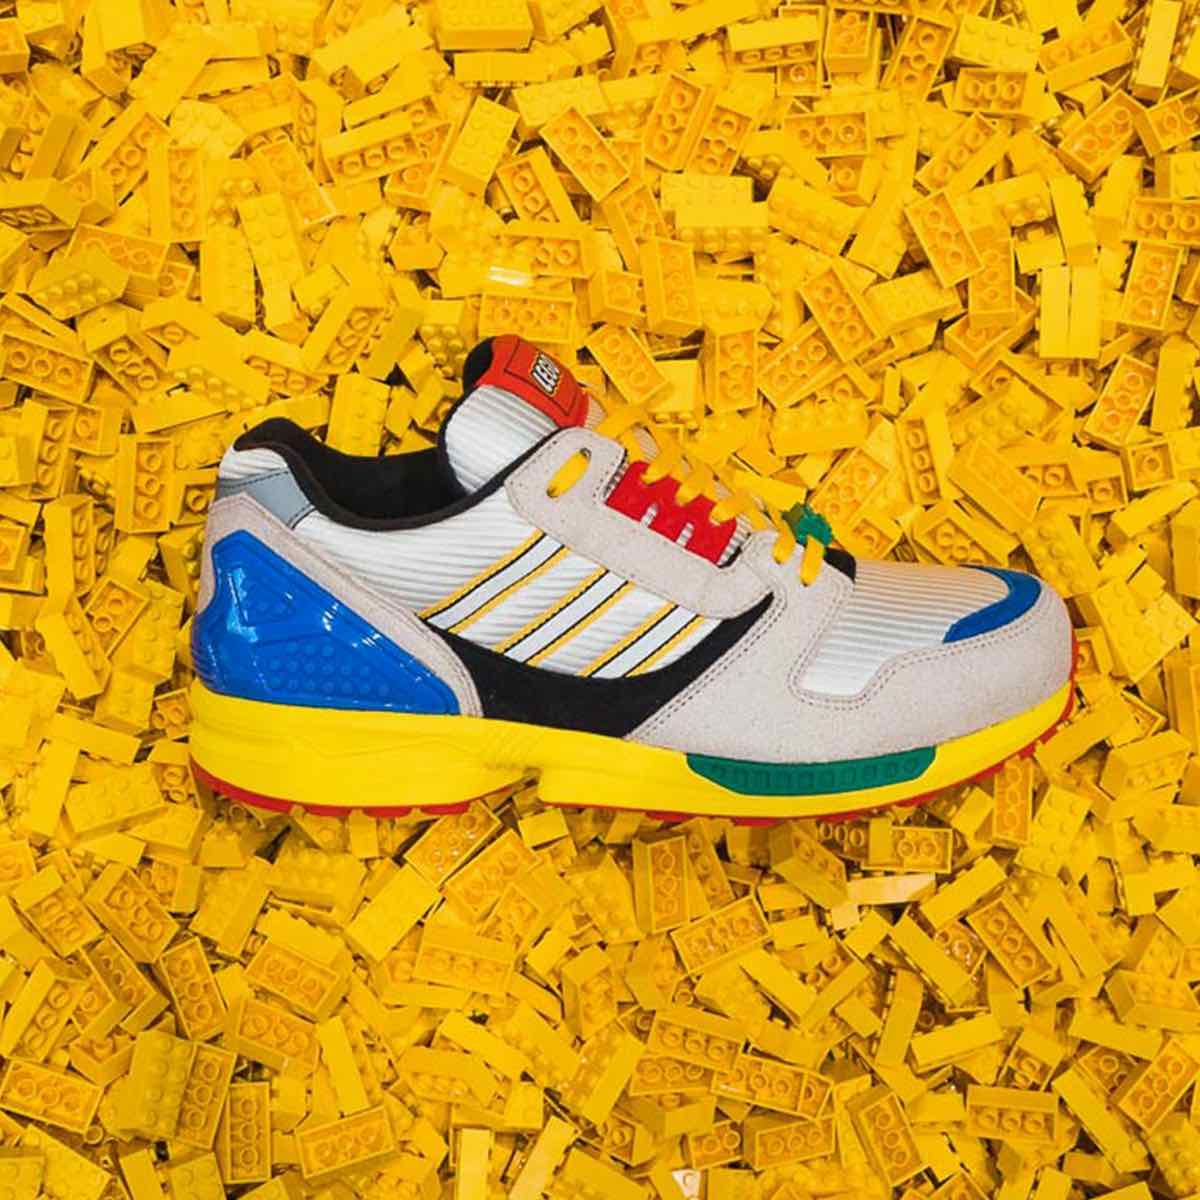 Adidas x LEGO
ZX 8000
Yellow / Bliss / White